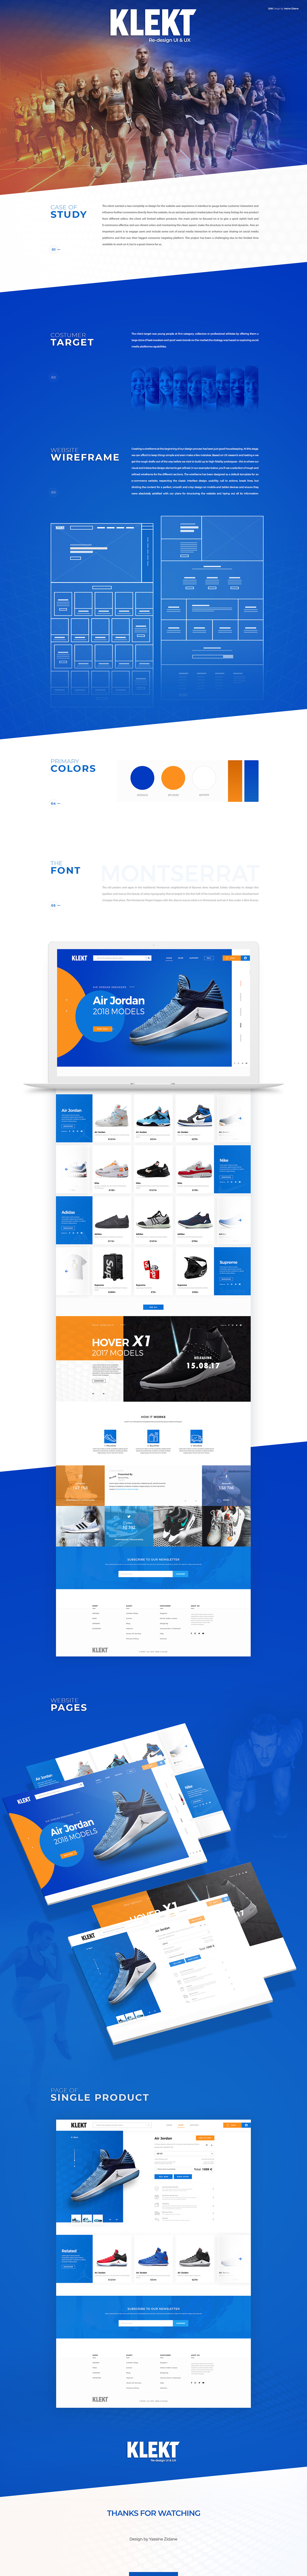 KLEKT - E-commerce Redesign